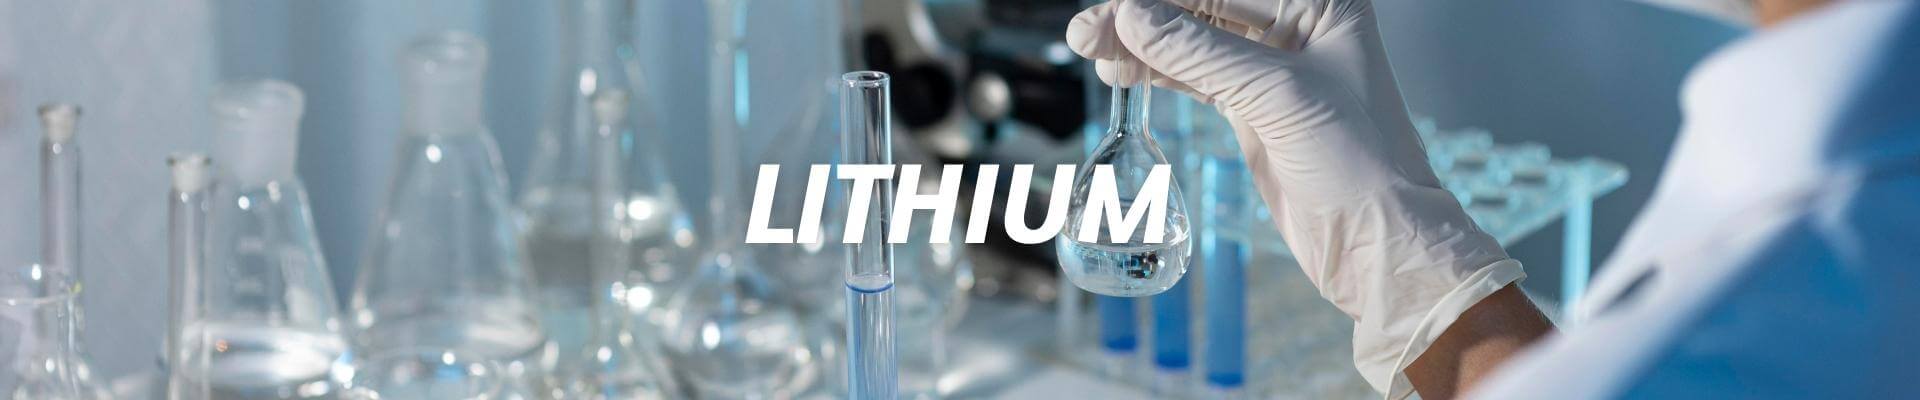 lithium-banner